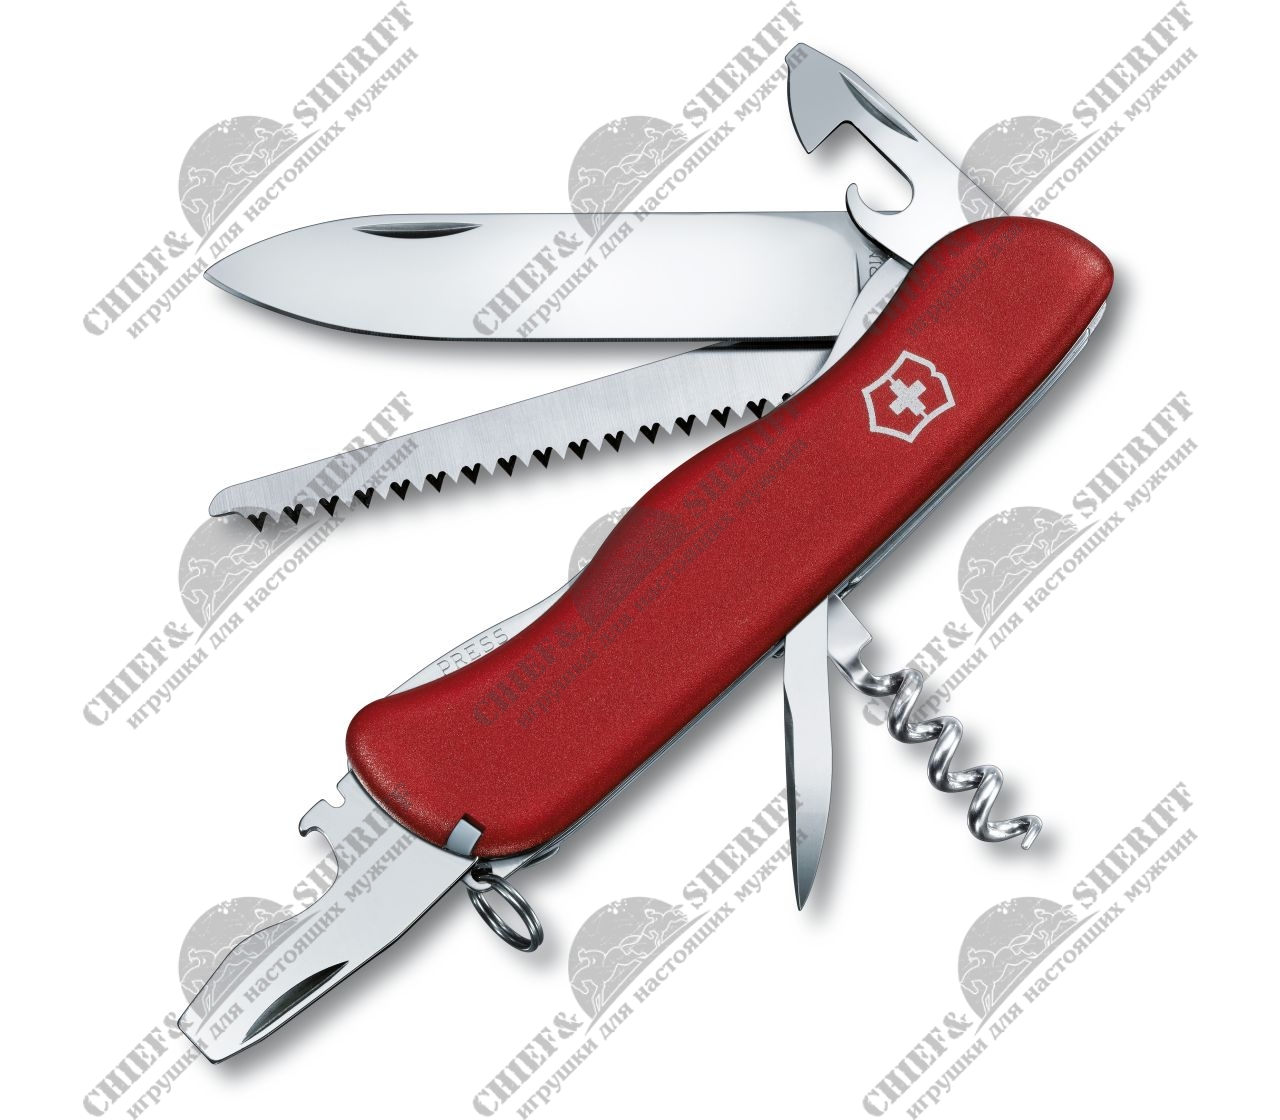 Нож перочинный Victorinox Forester (красный) 111 мм, 12 функций, 0.8363